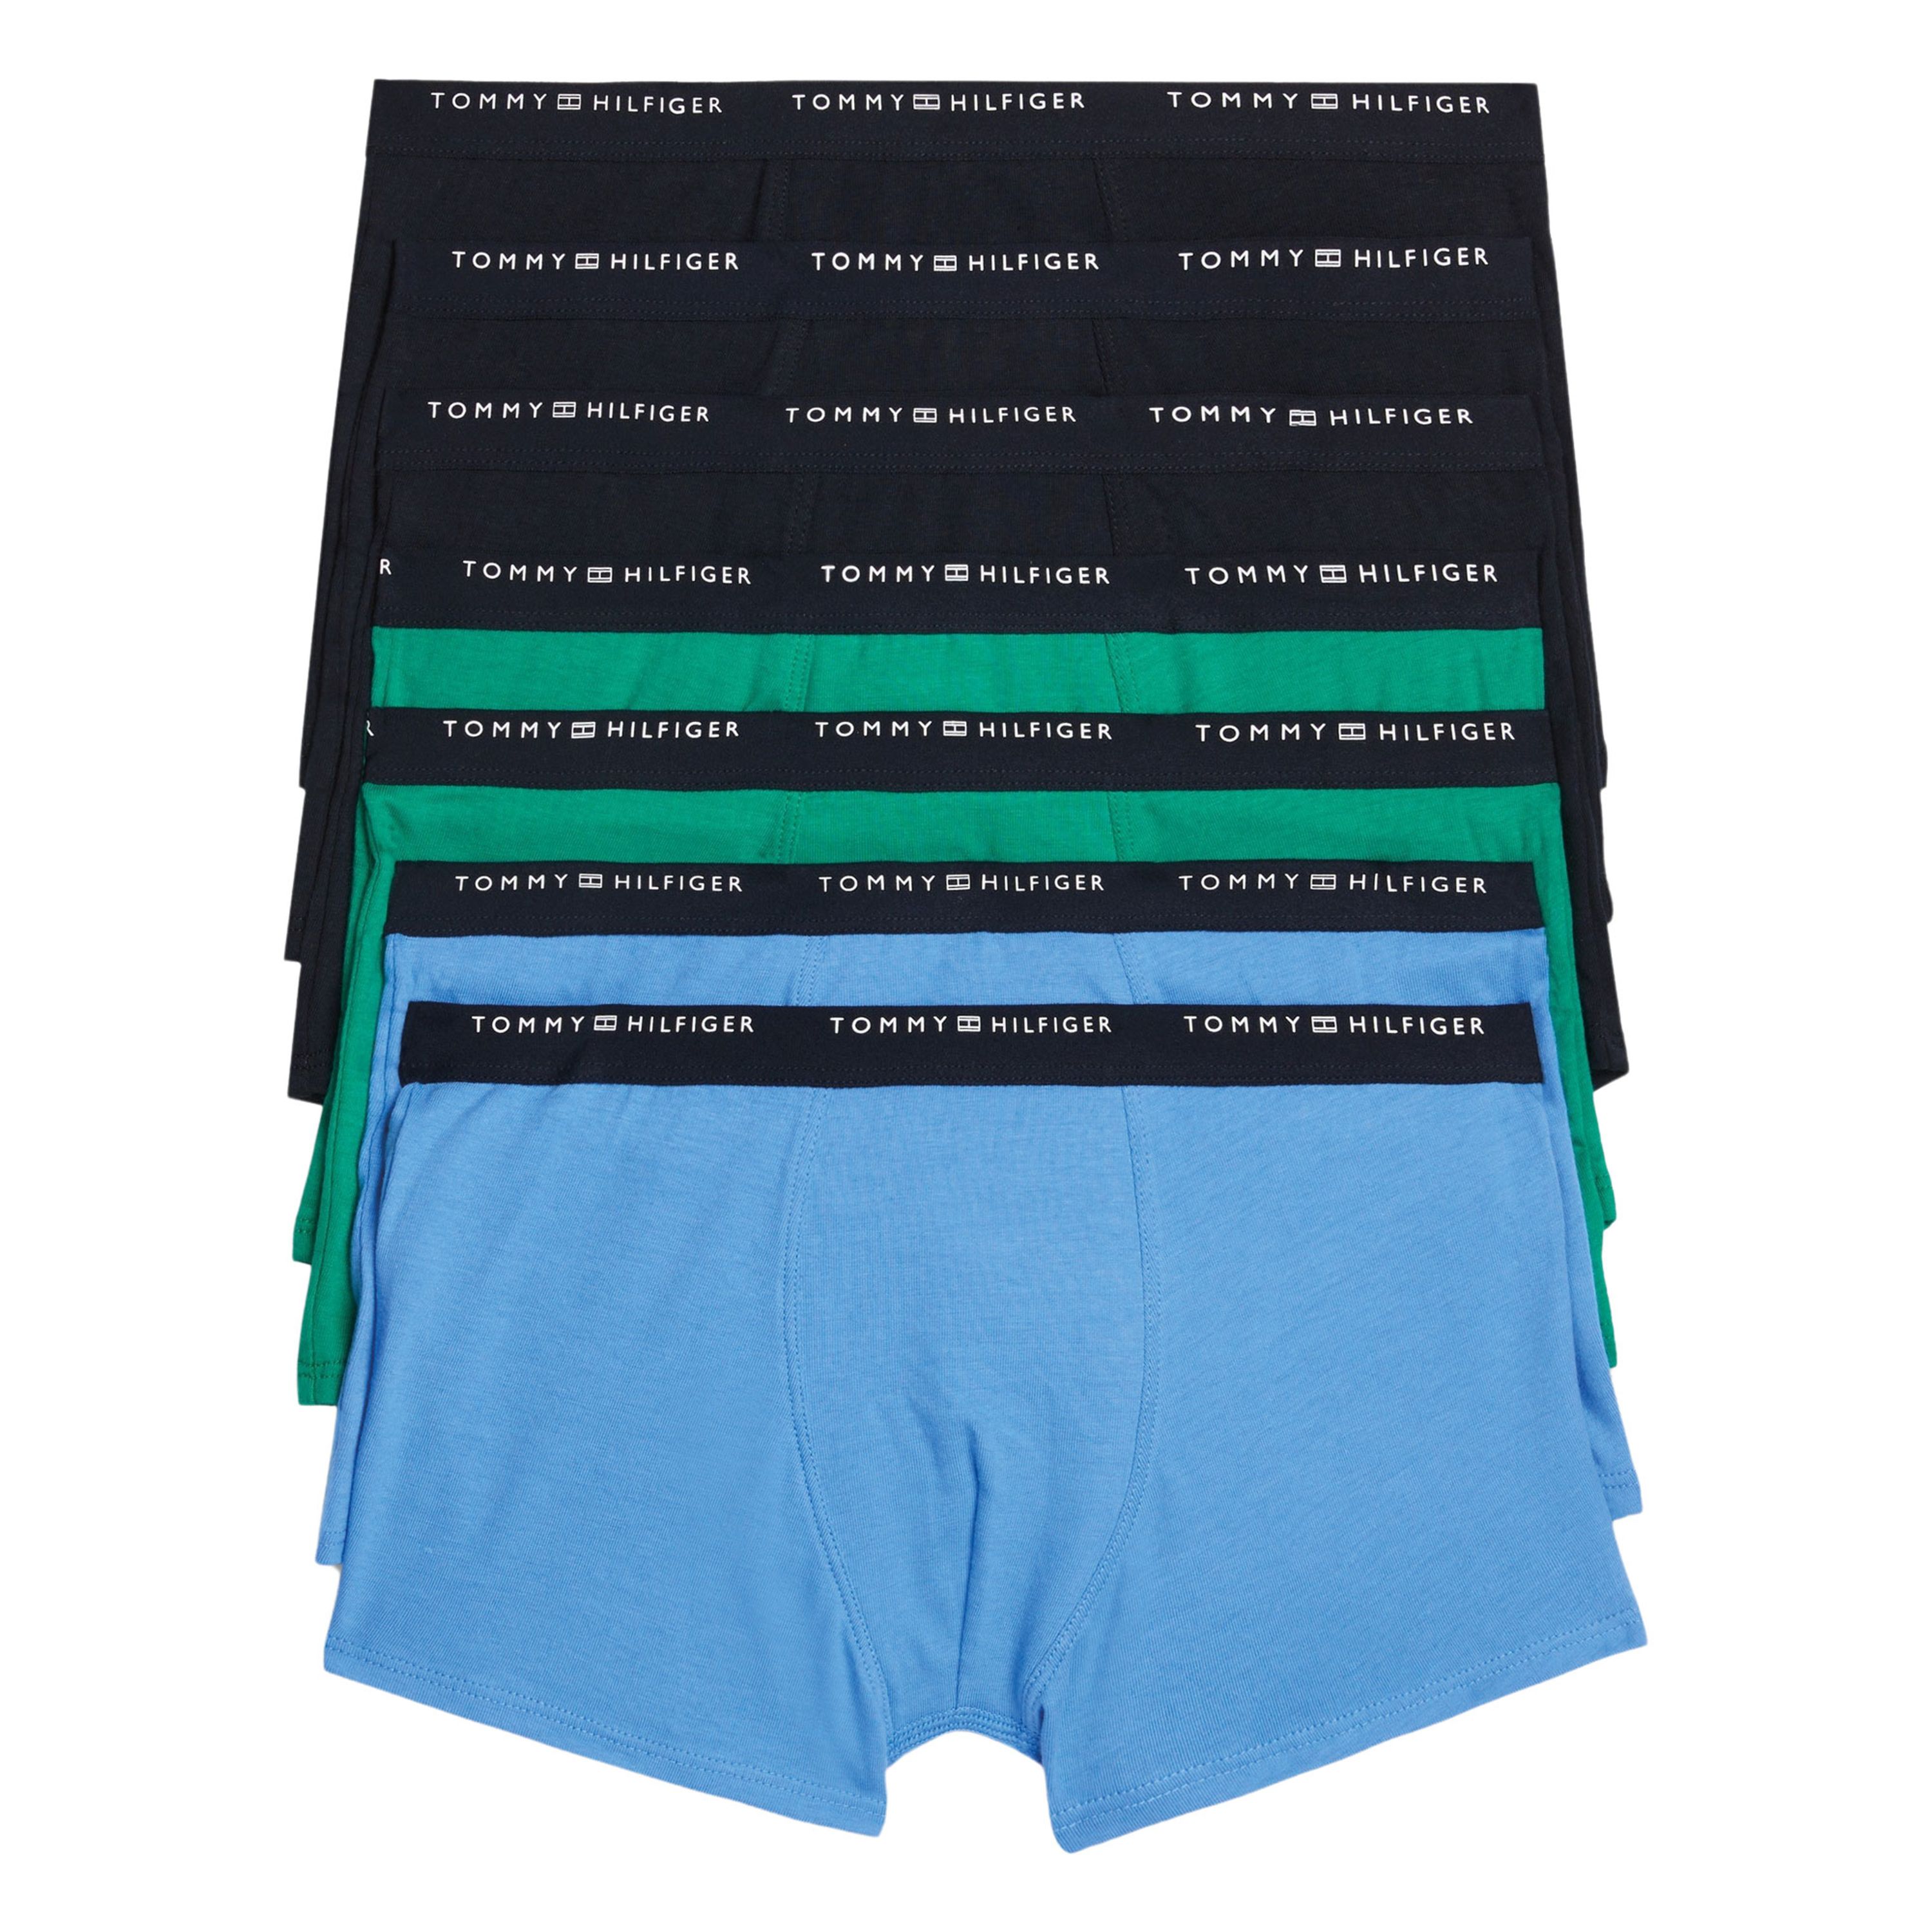 Tommy Hilfiger boxershort set van 7 blauw groen zwart Multi Jongens Stretchkatoen 128-140